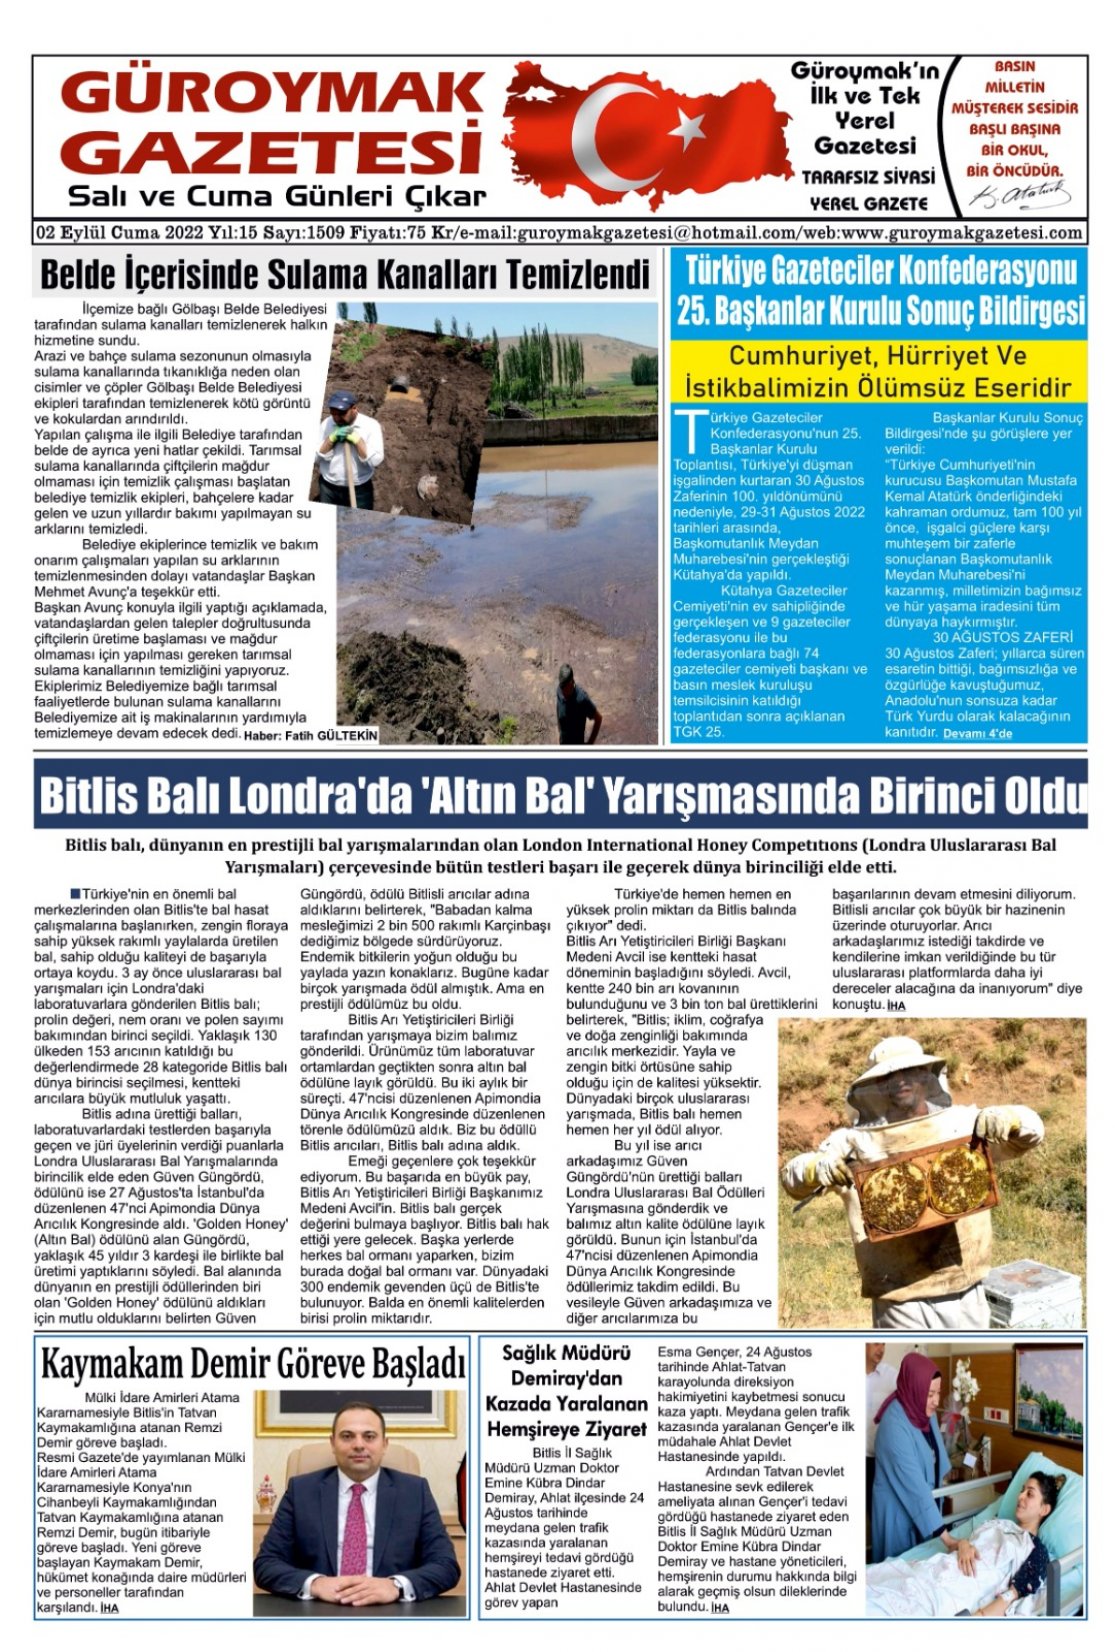 Güroymak Gazetesi IMG-20220902-WA0002.jpg Sayılı Gazete Küpürü